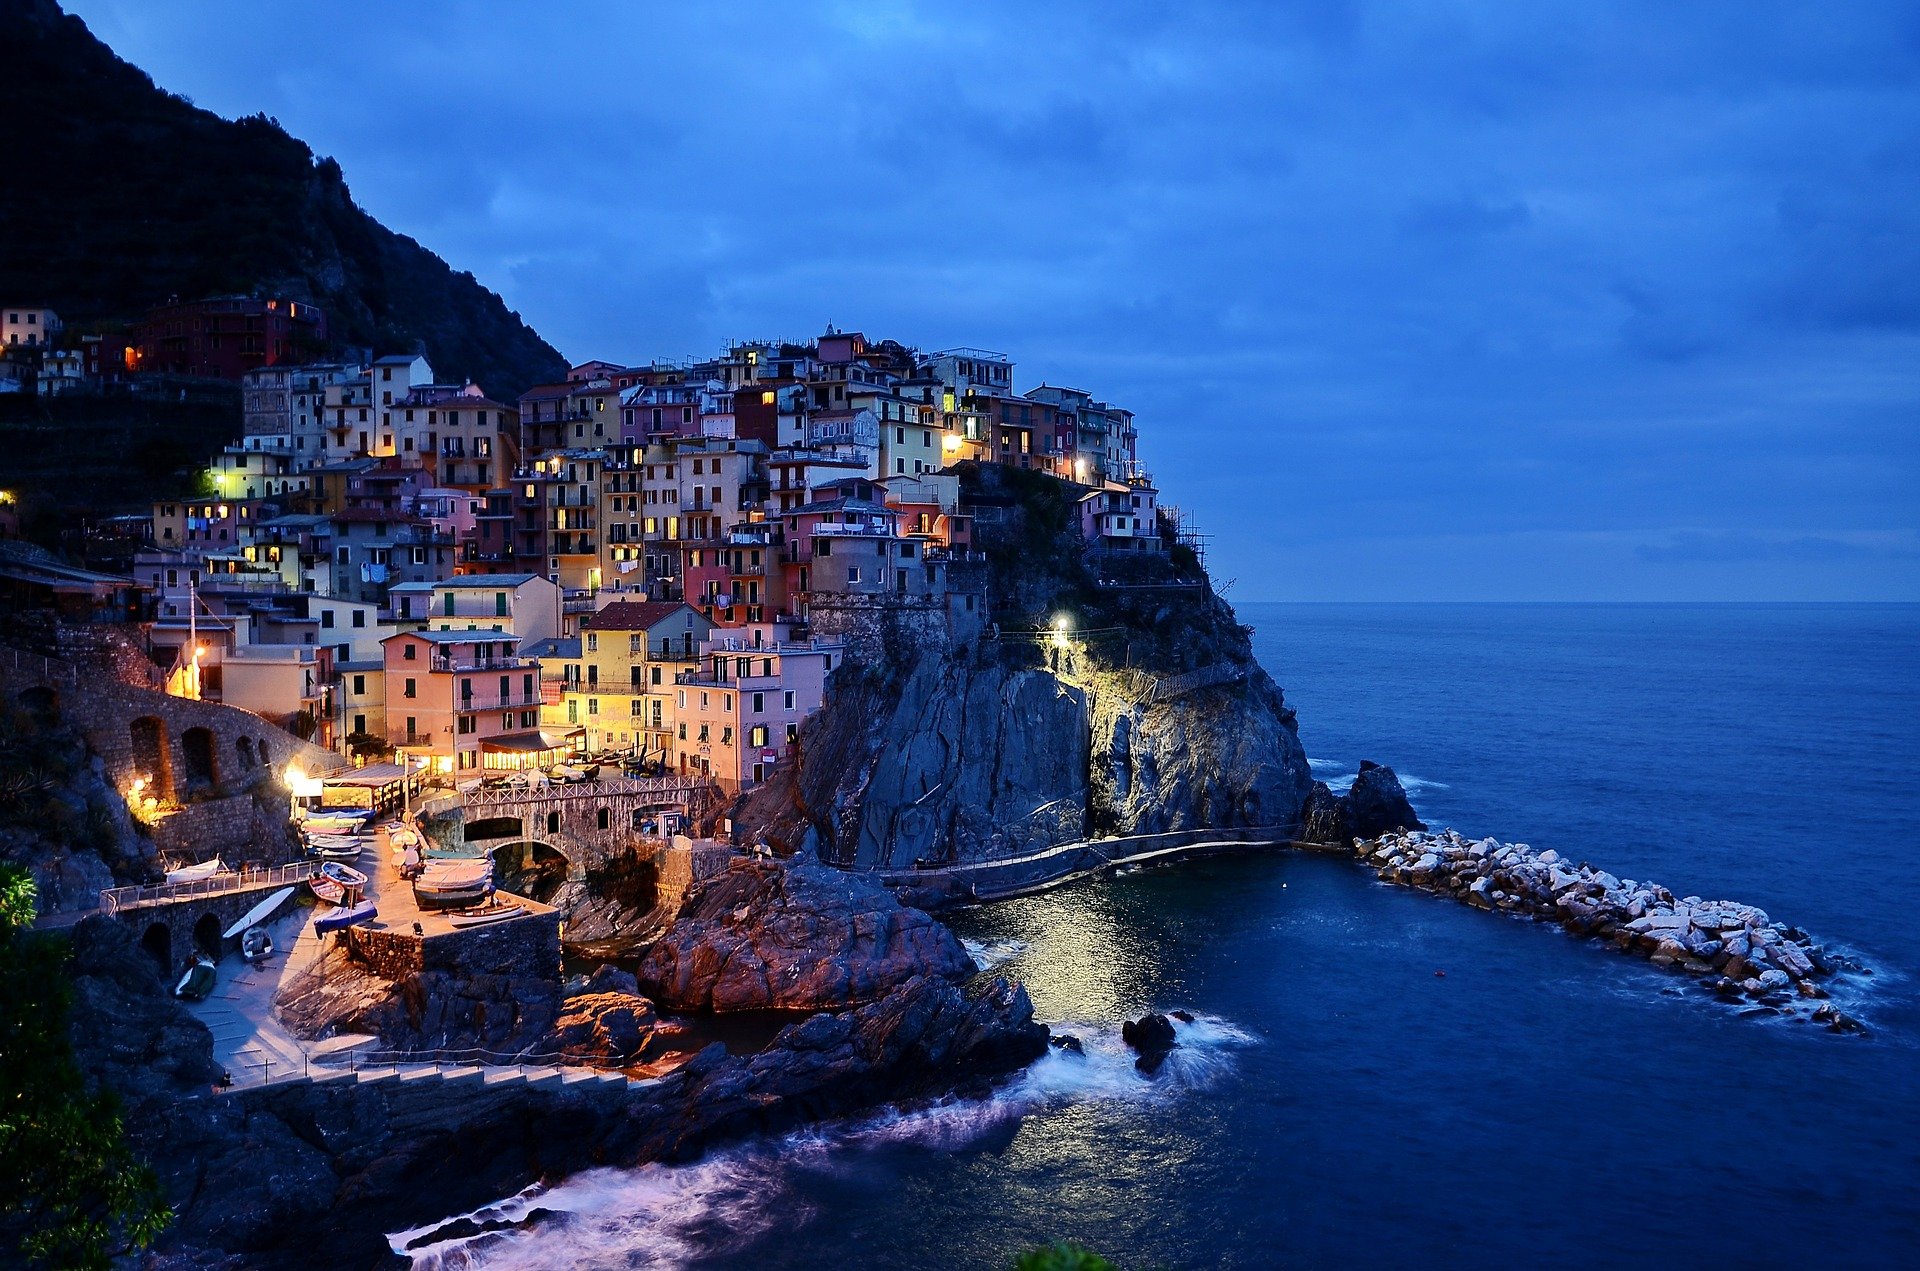 Esperienze turistiche in Italia: le preferite dagli stranieri